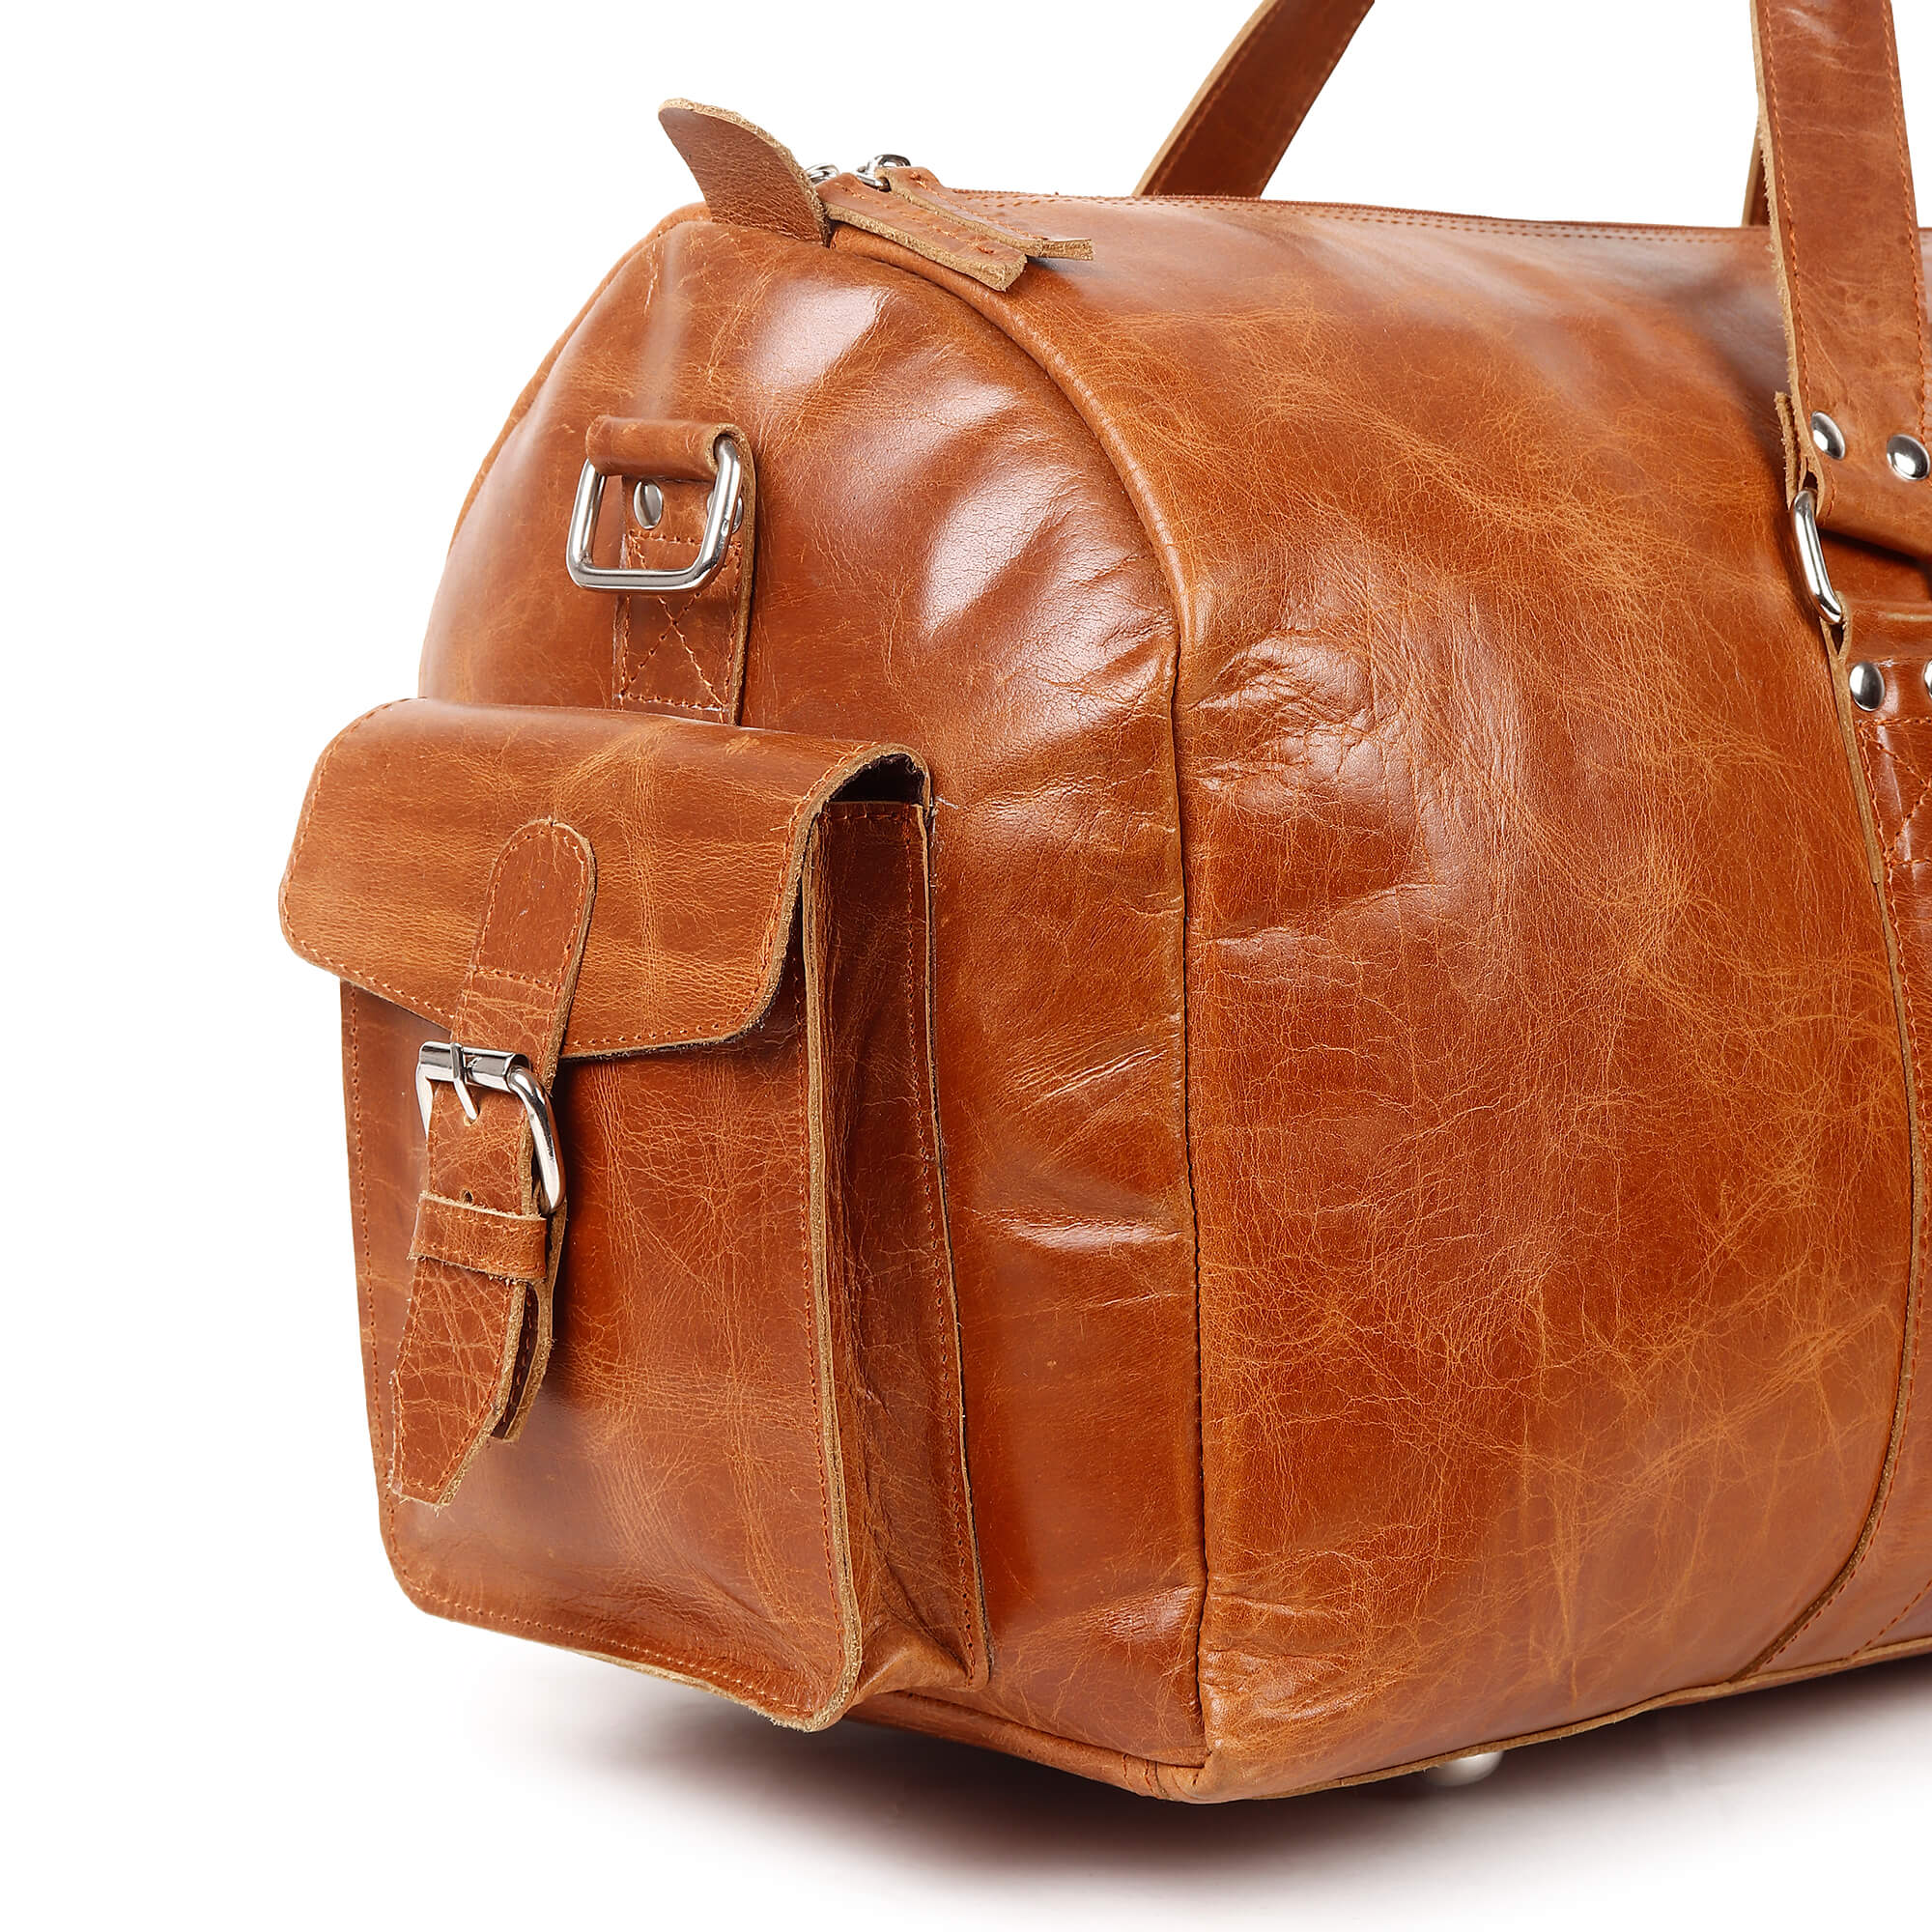 HILLBIRD Aurcal Tan Leather Duffle Bag